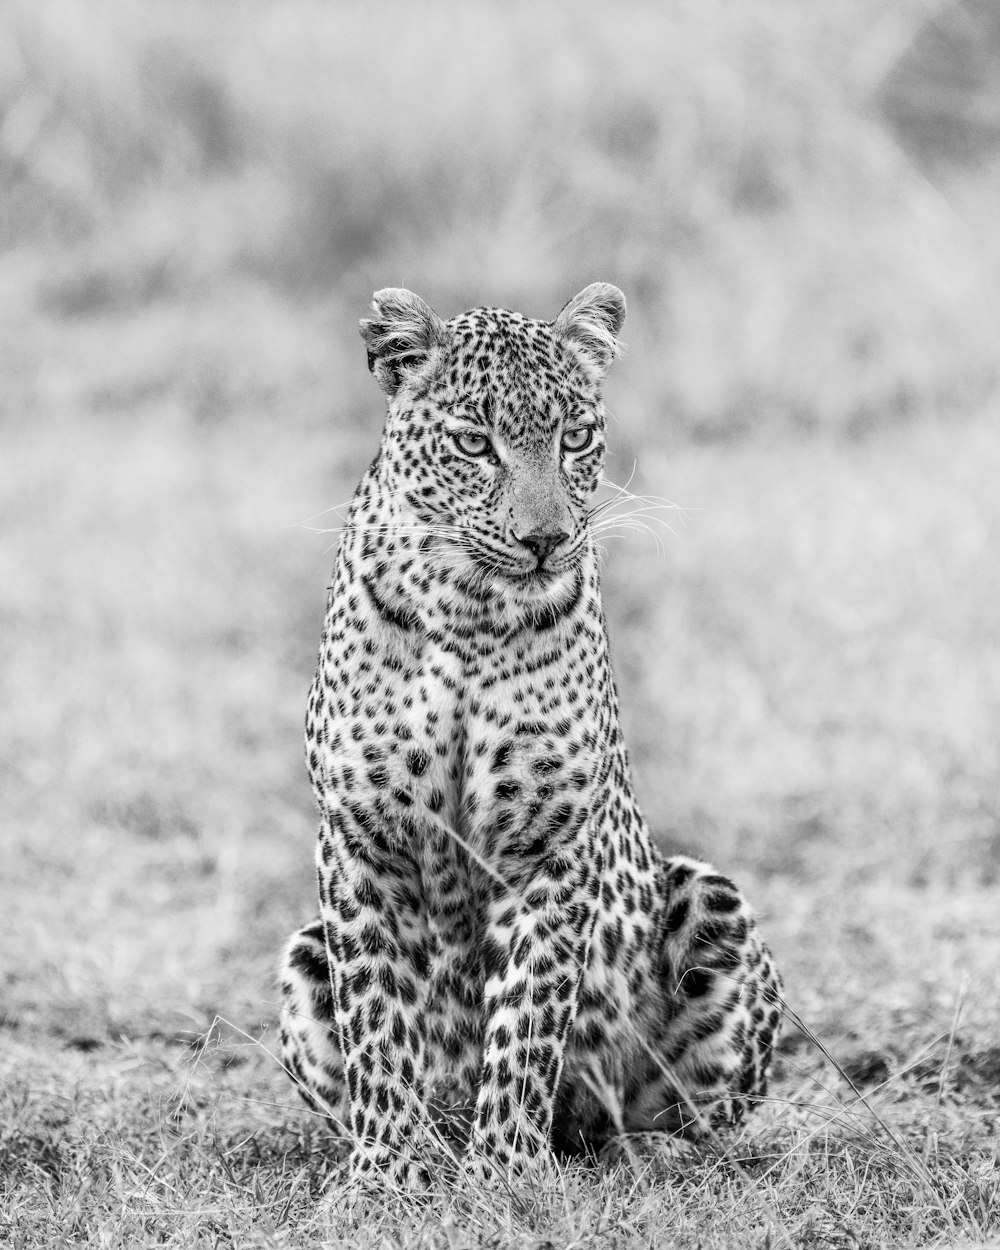 grayscale photo of leopard walking on grass field